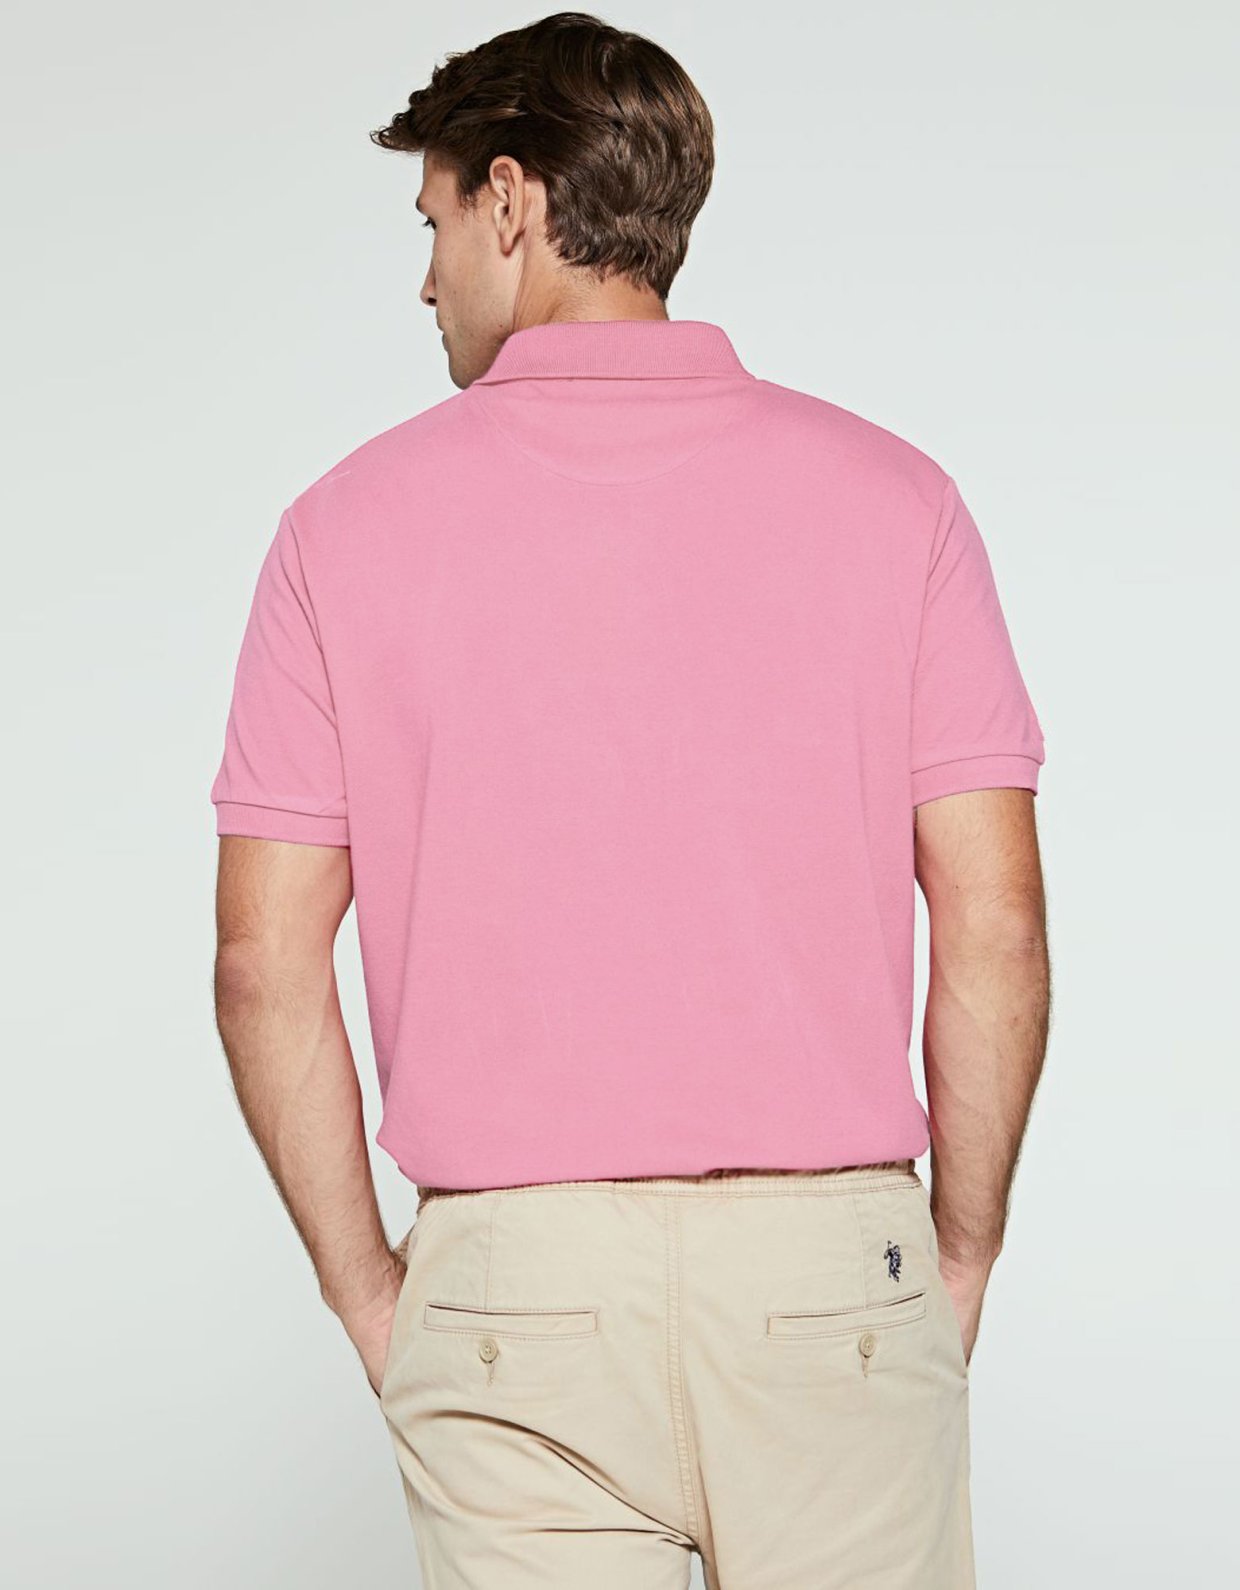 U.S Polo ASSN Polo t-shirt light pink